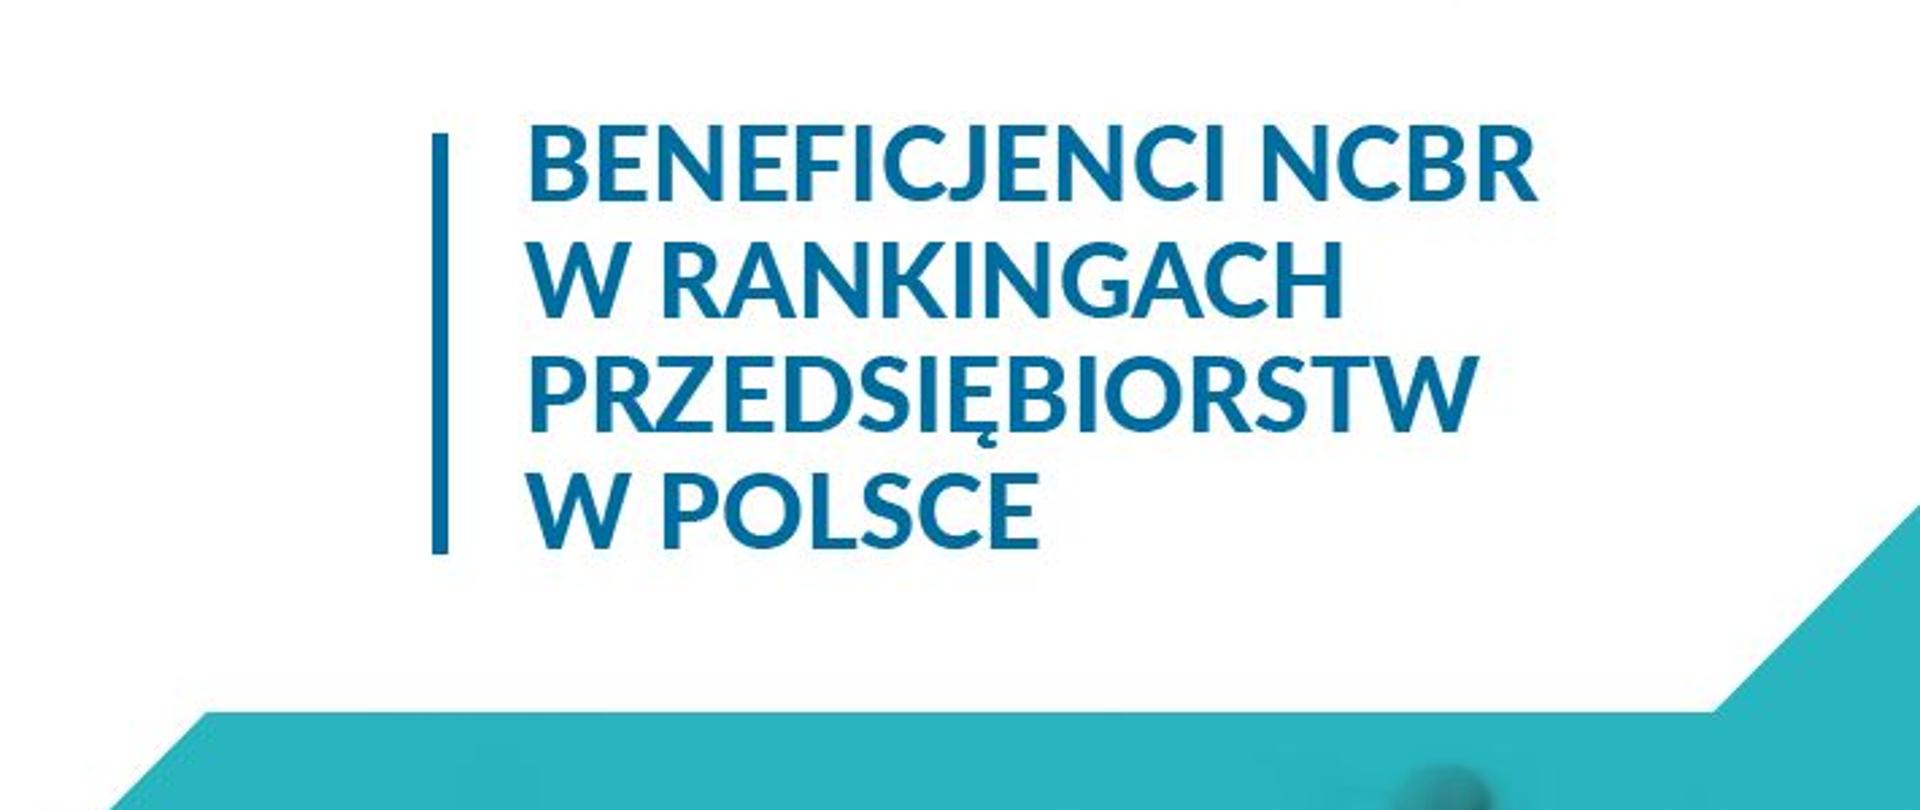 Beneficjenci NCBR w rankingach przedsiębiorstw w Polsce